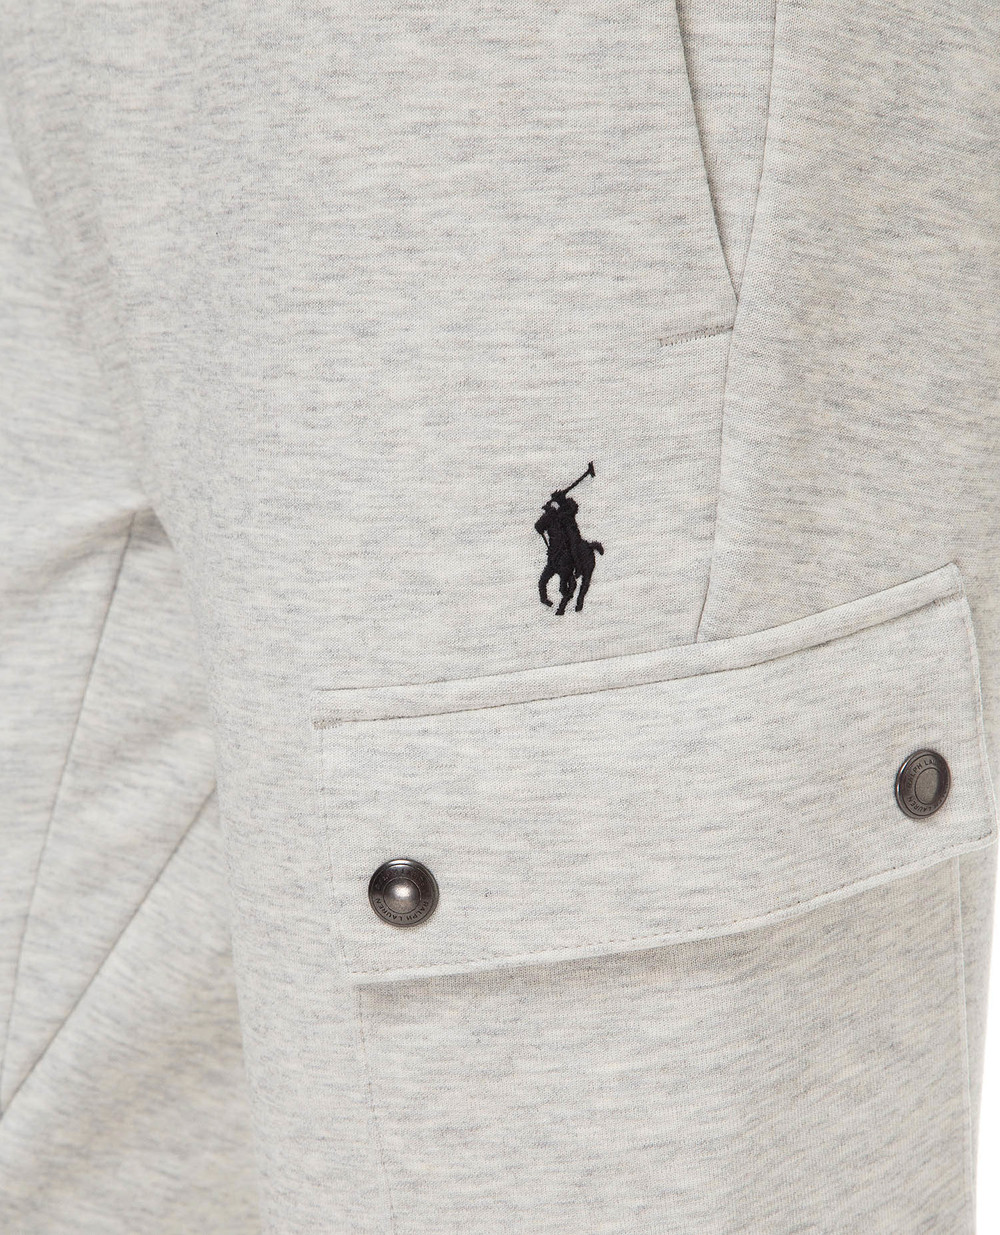 Спортивные брюки Polo Ralph Lauren 710730495001, серый цвет • Купить в интернет-магазине Kameron